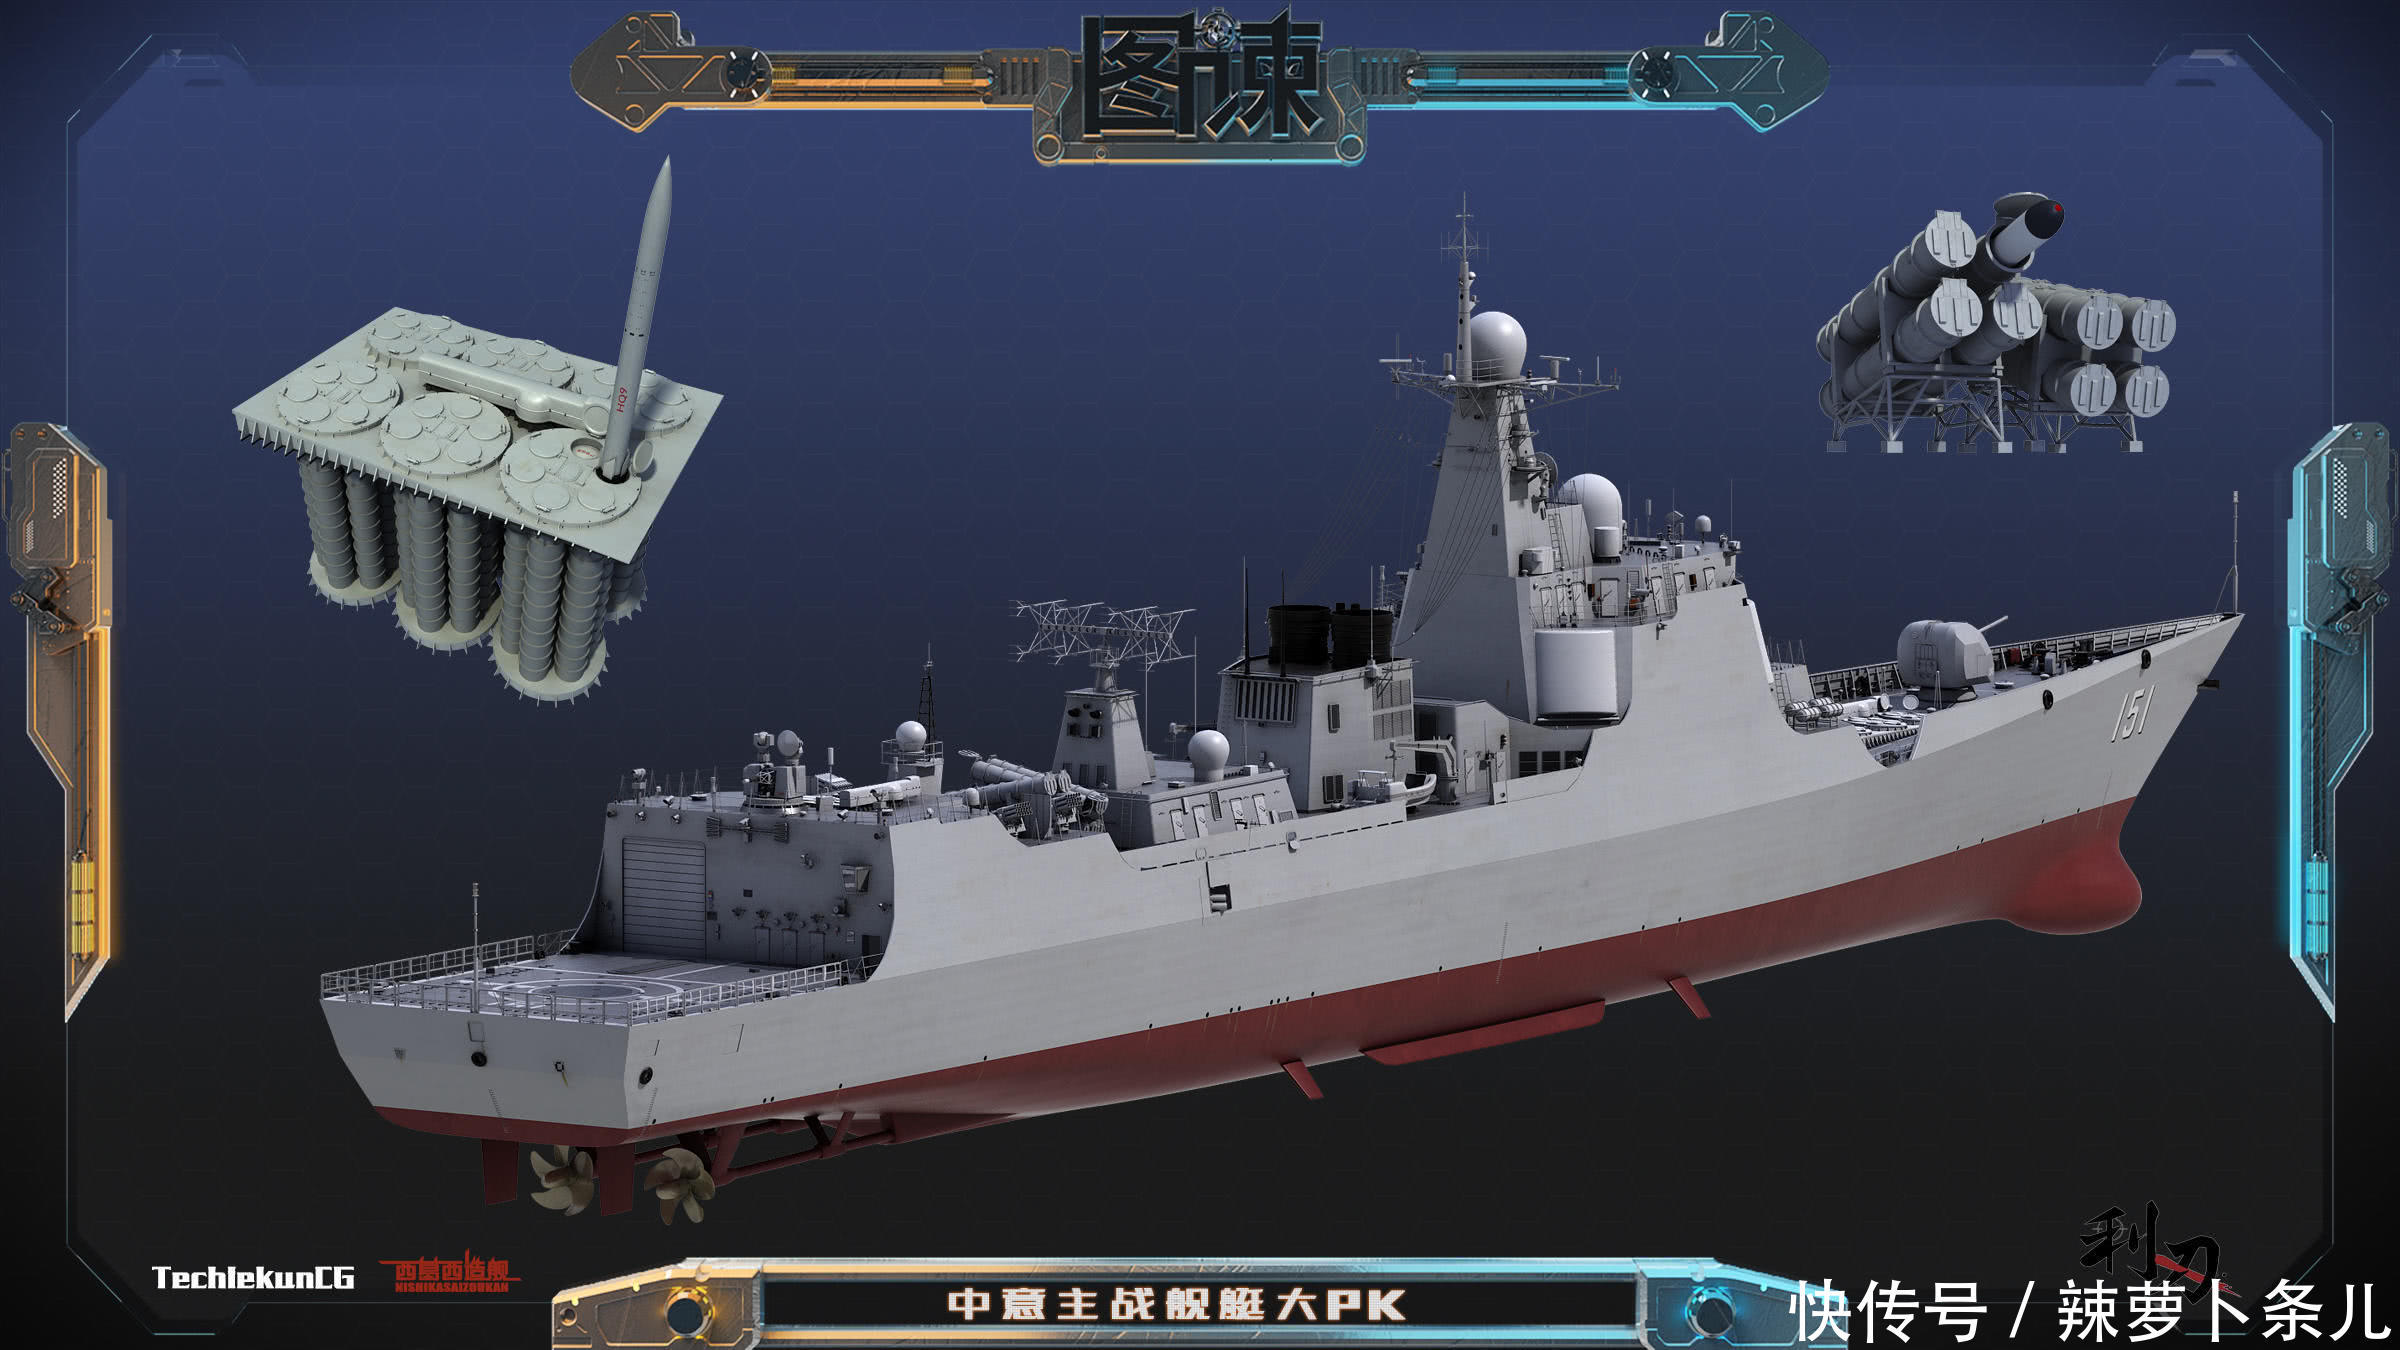 图谏CG:意大利主力护卫舰有一项性能远远超过“中华神盾”